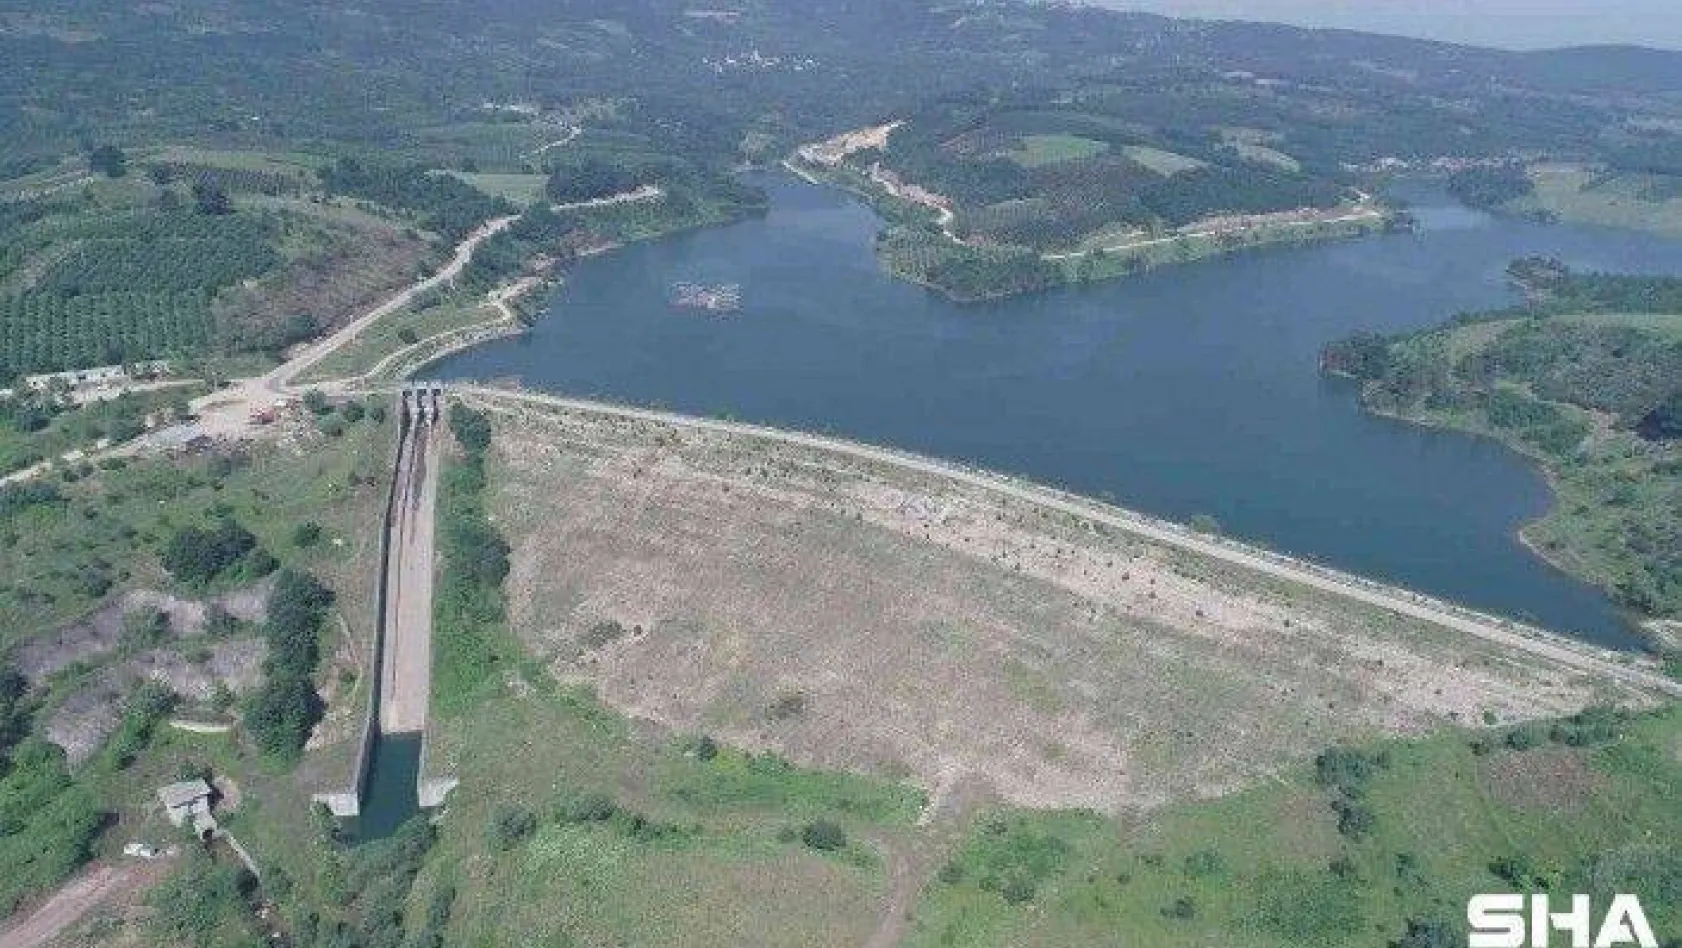 19 yılda Bursa'ya 21 baraj ve 16 yeni gölet yapıldı, 10 yeni baraj devam ediyor